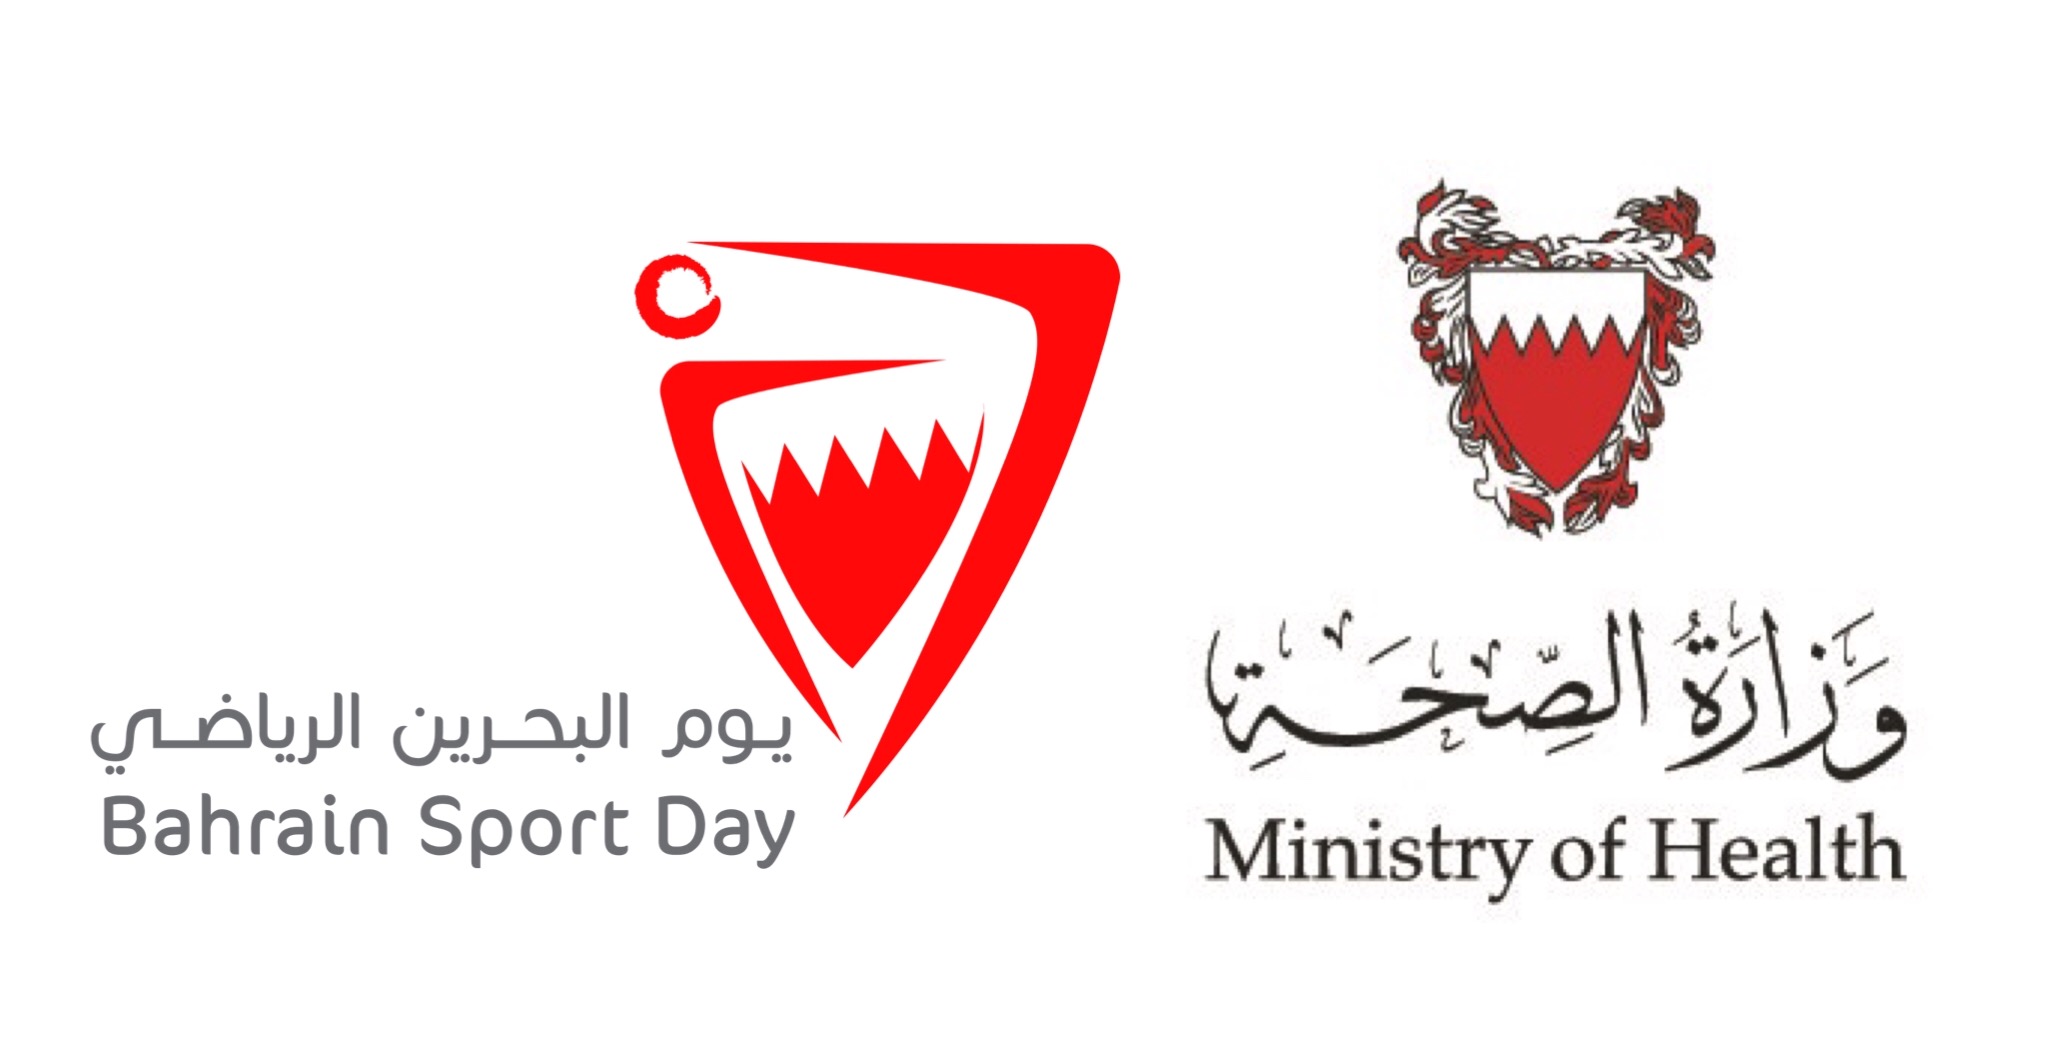 وزارة الصحة تعلن عن ساعات العمل في يوم البحرين الرياضي